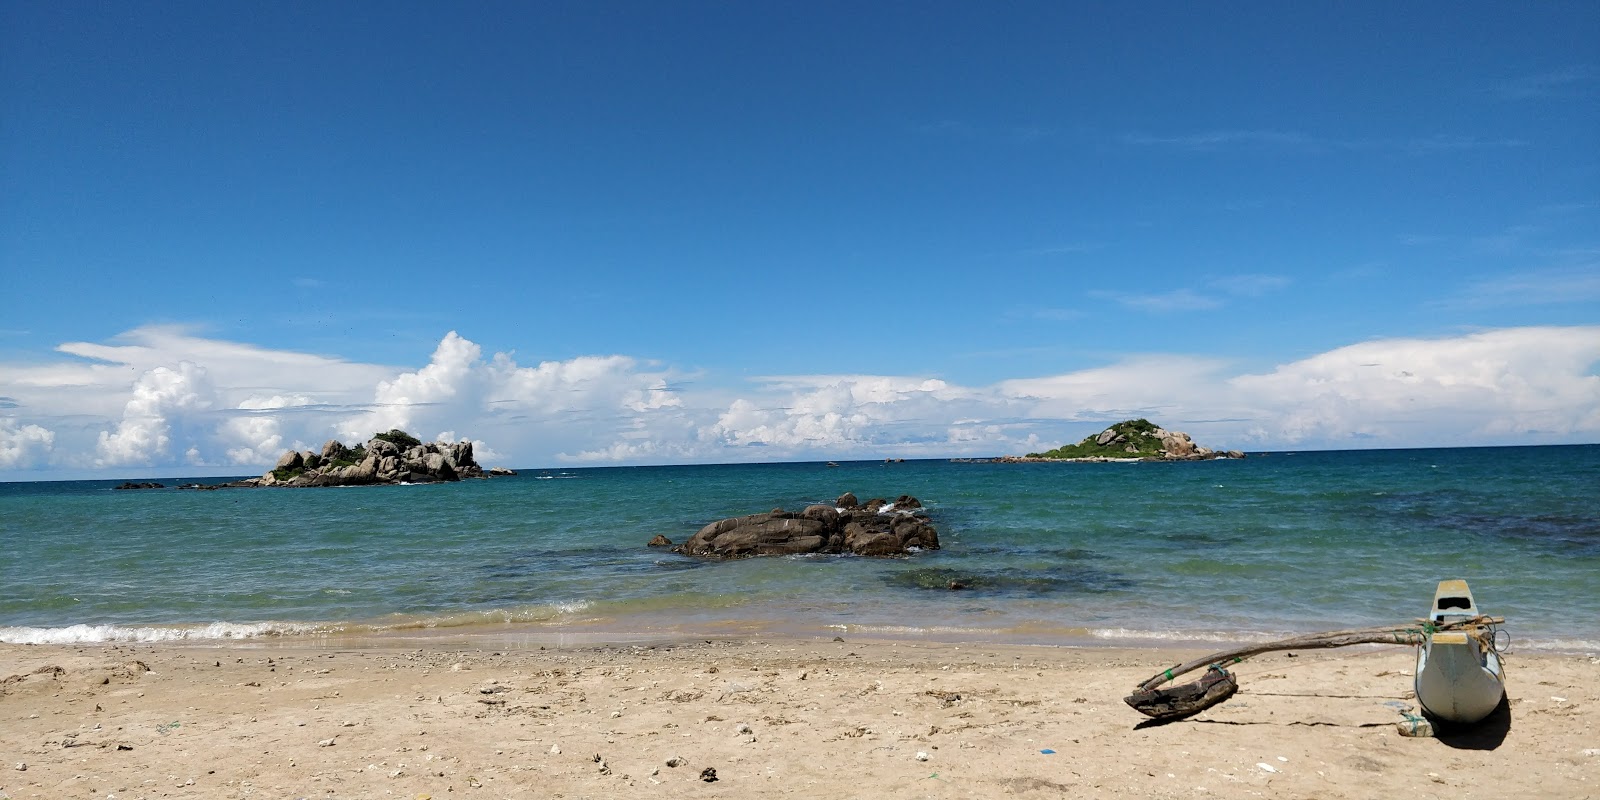 Lanka Patuna Beach'in fotoğrafı vahşi alan